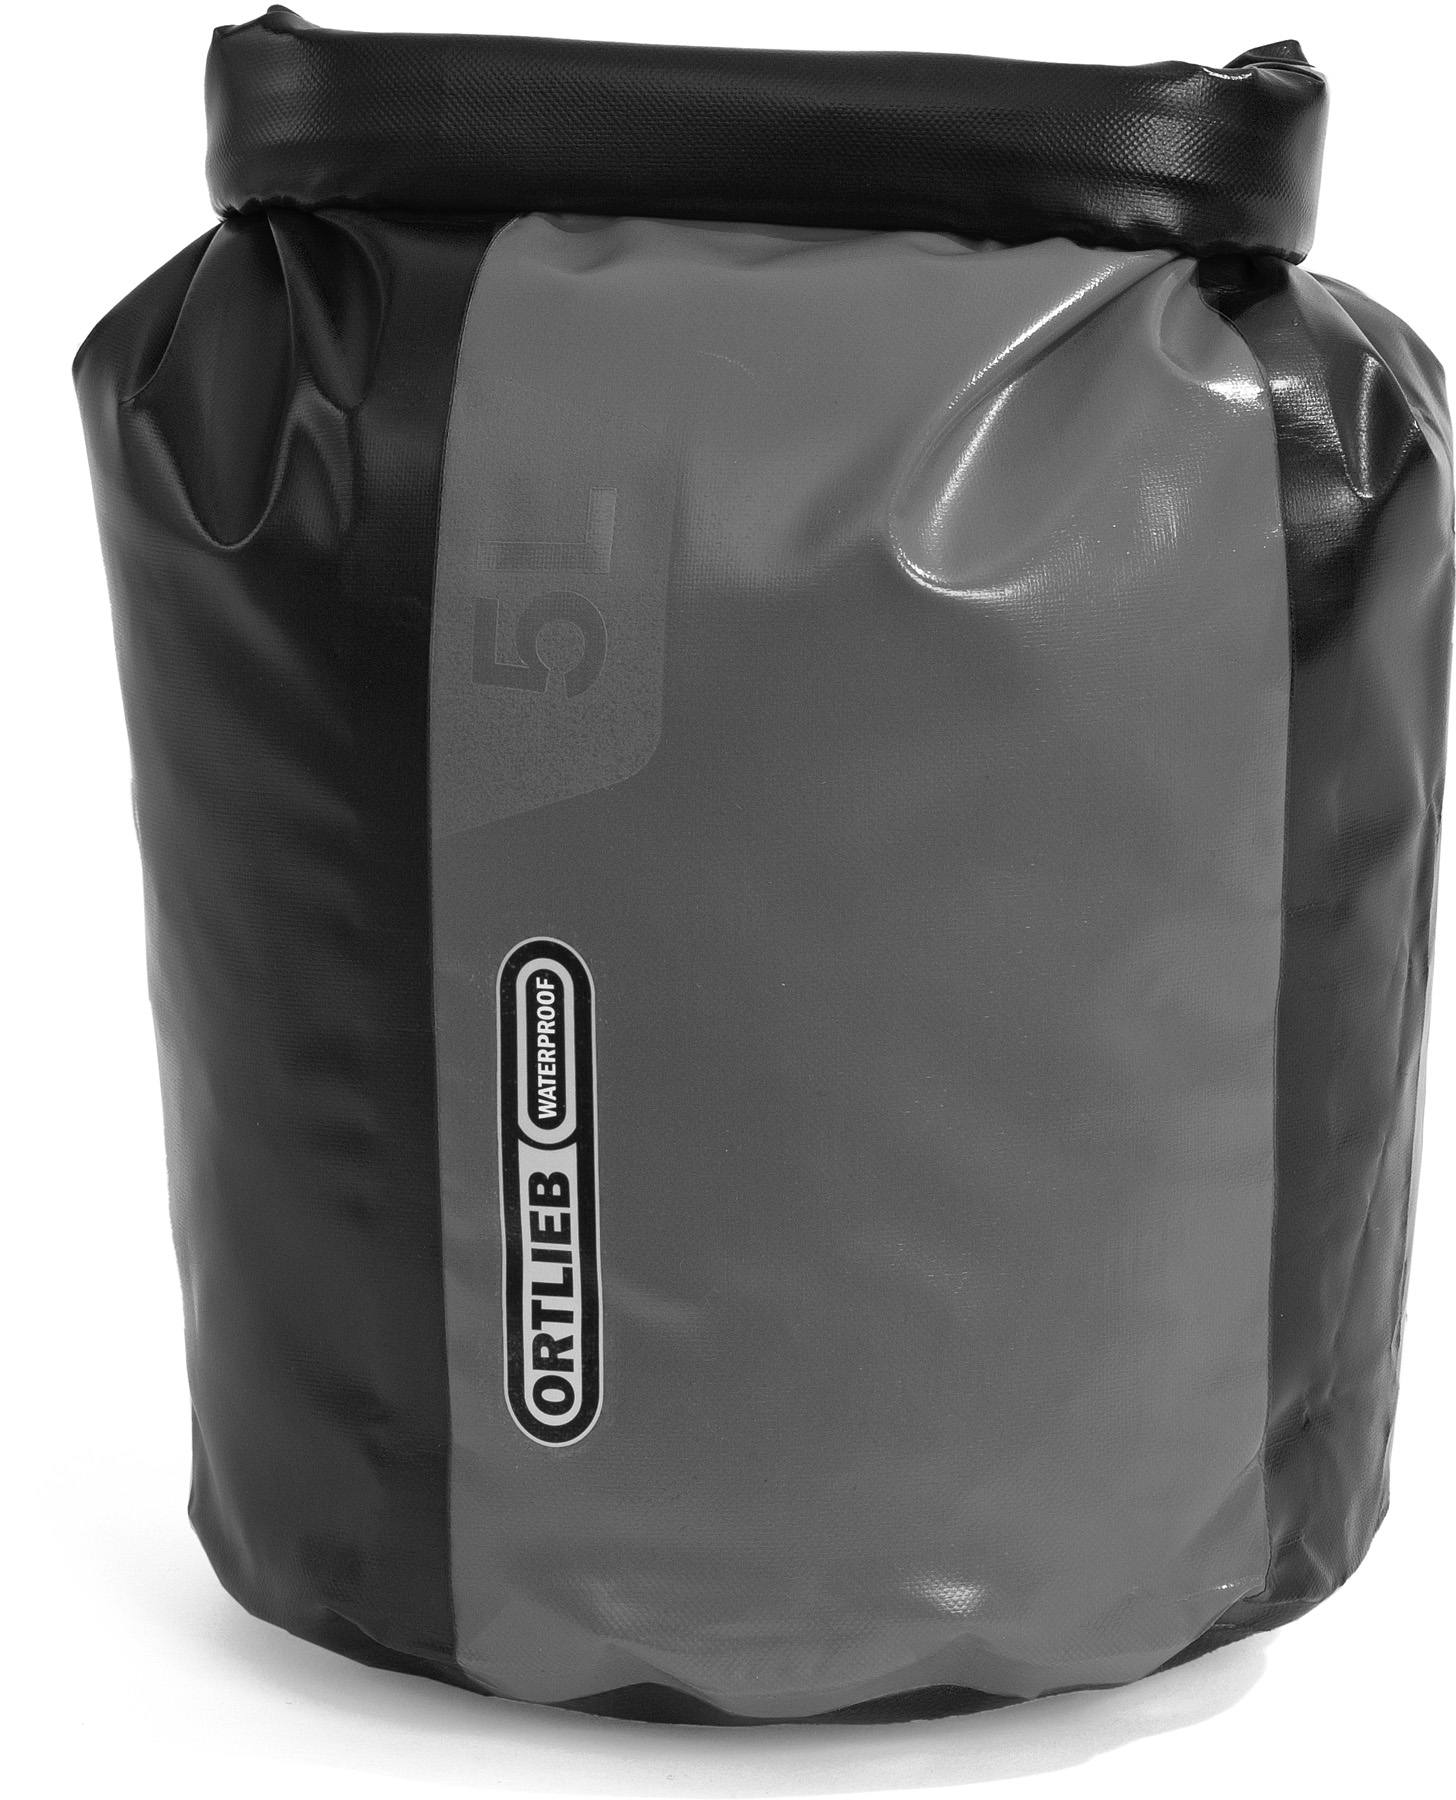 Ortlieb Drybag K4351 7 liters Black